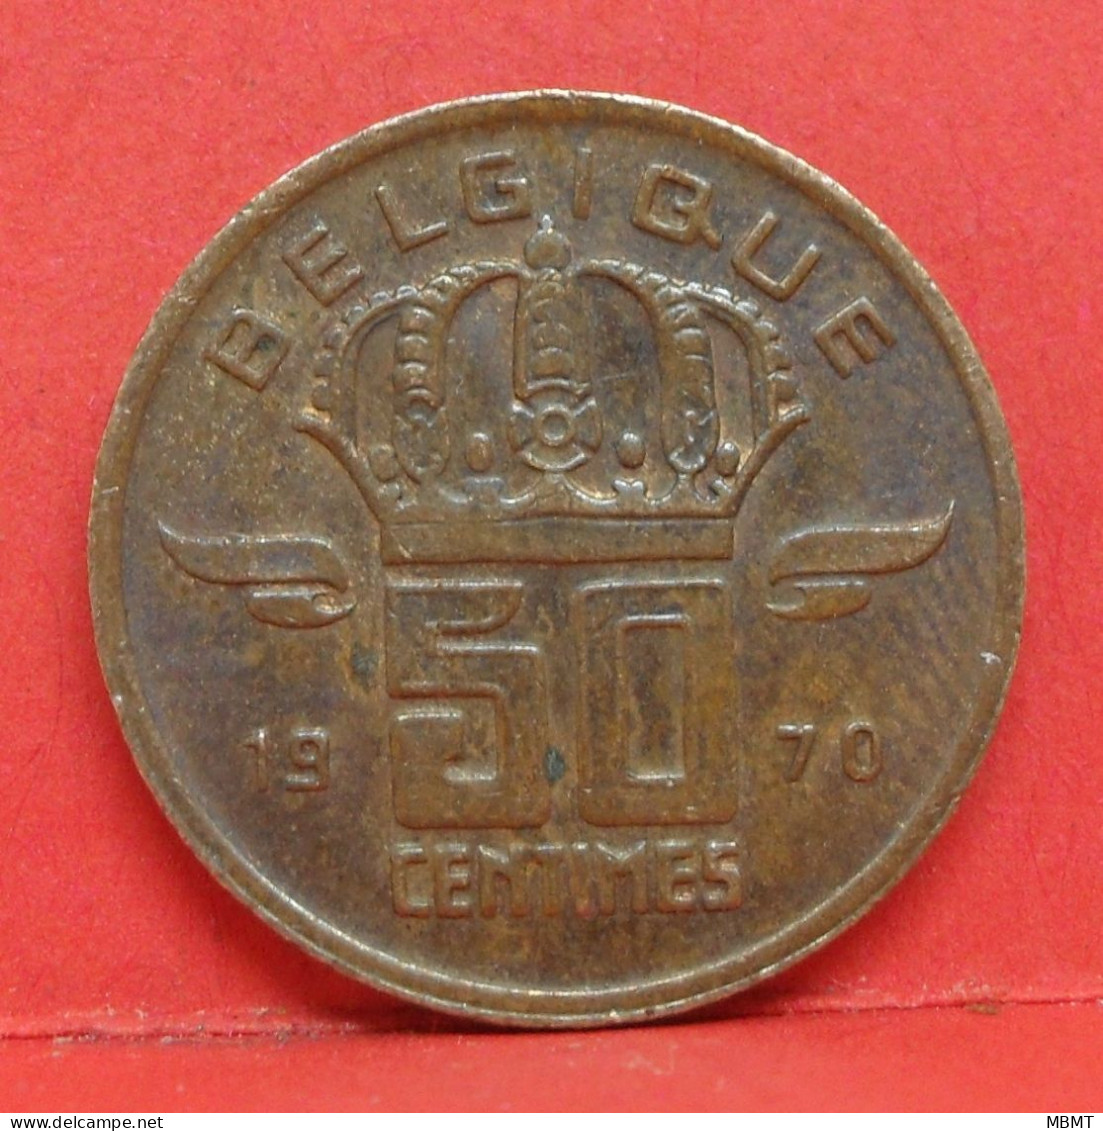 50 Centimes 1970 - TTB - Pièce Monnaie Belgique - Article N°1716 - 50 Centimes